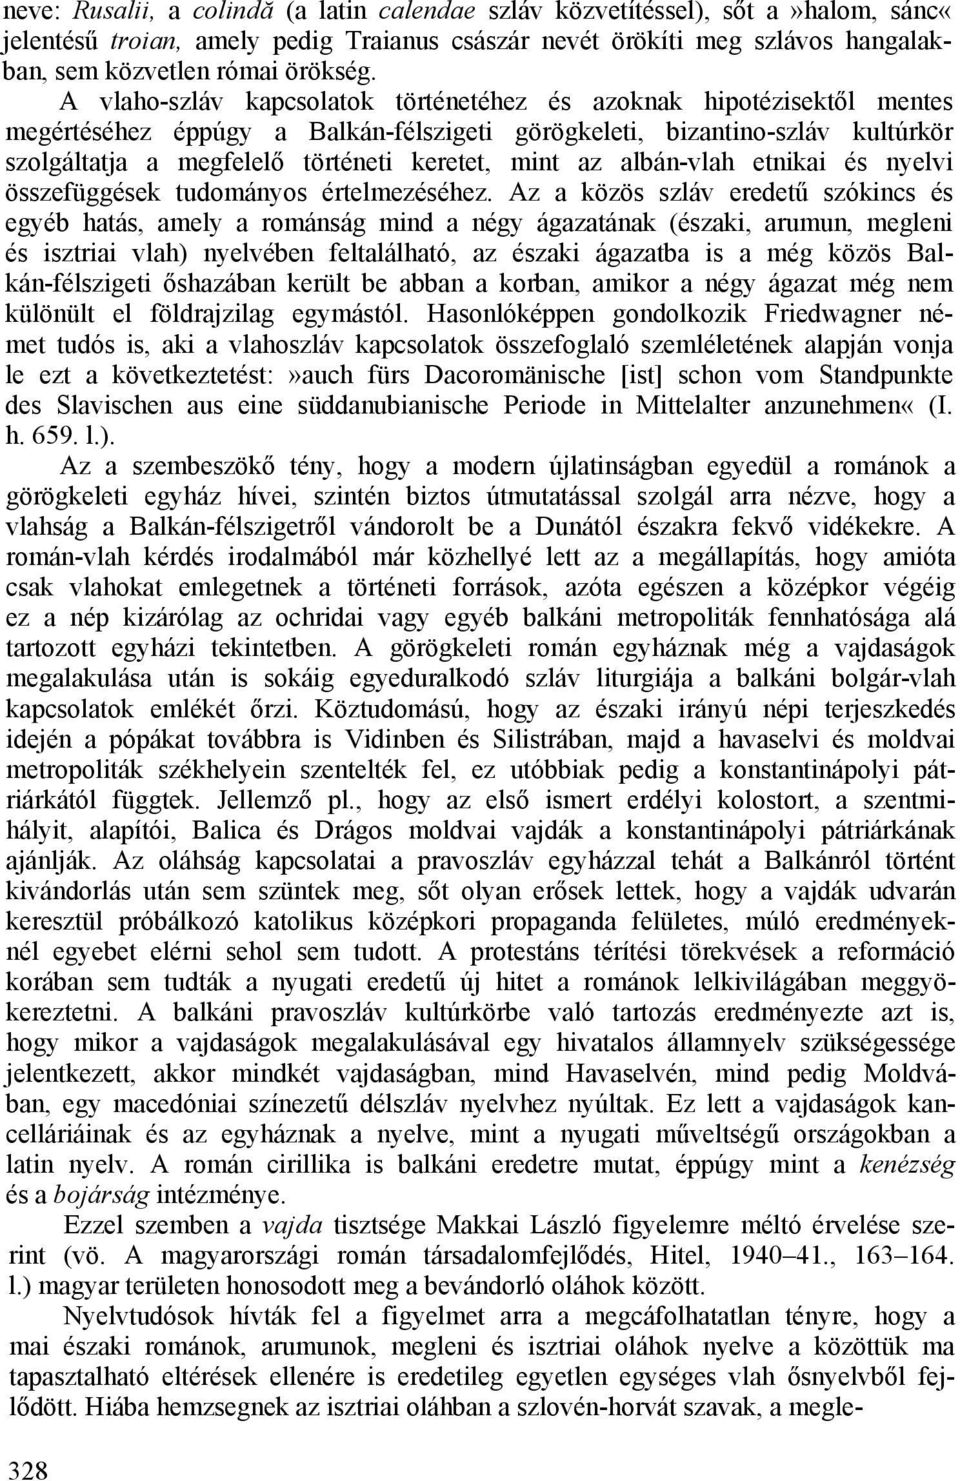 az albán-vlah etnikai és nyelvi összefüggések tudományos értelmezéséhez.